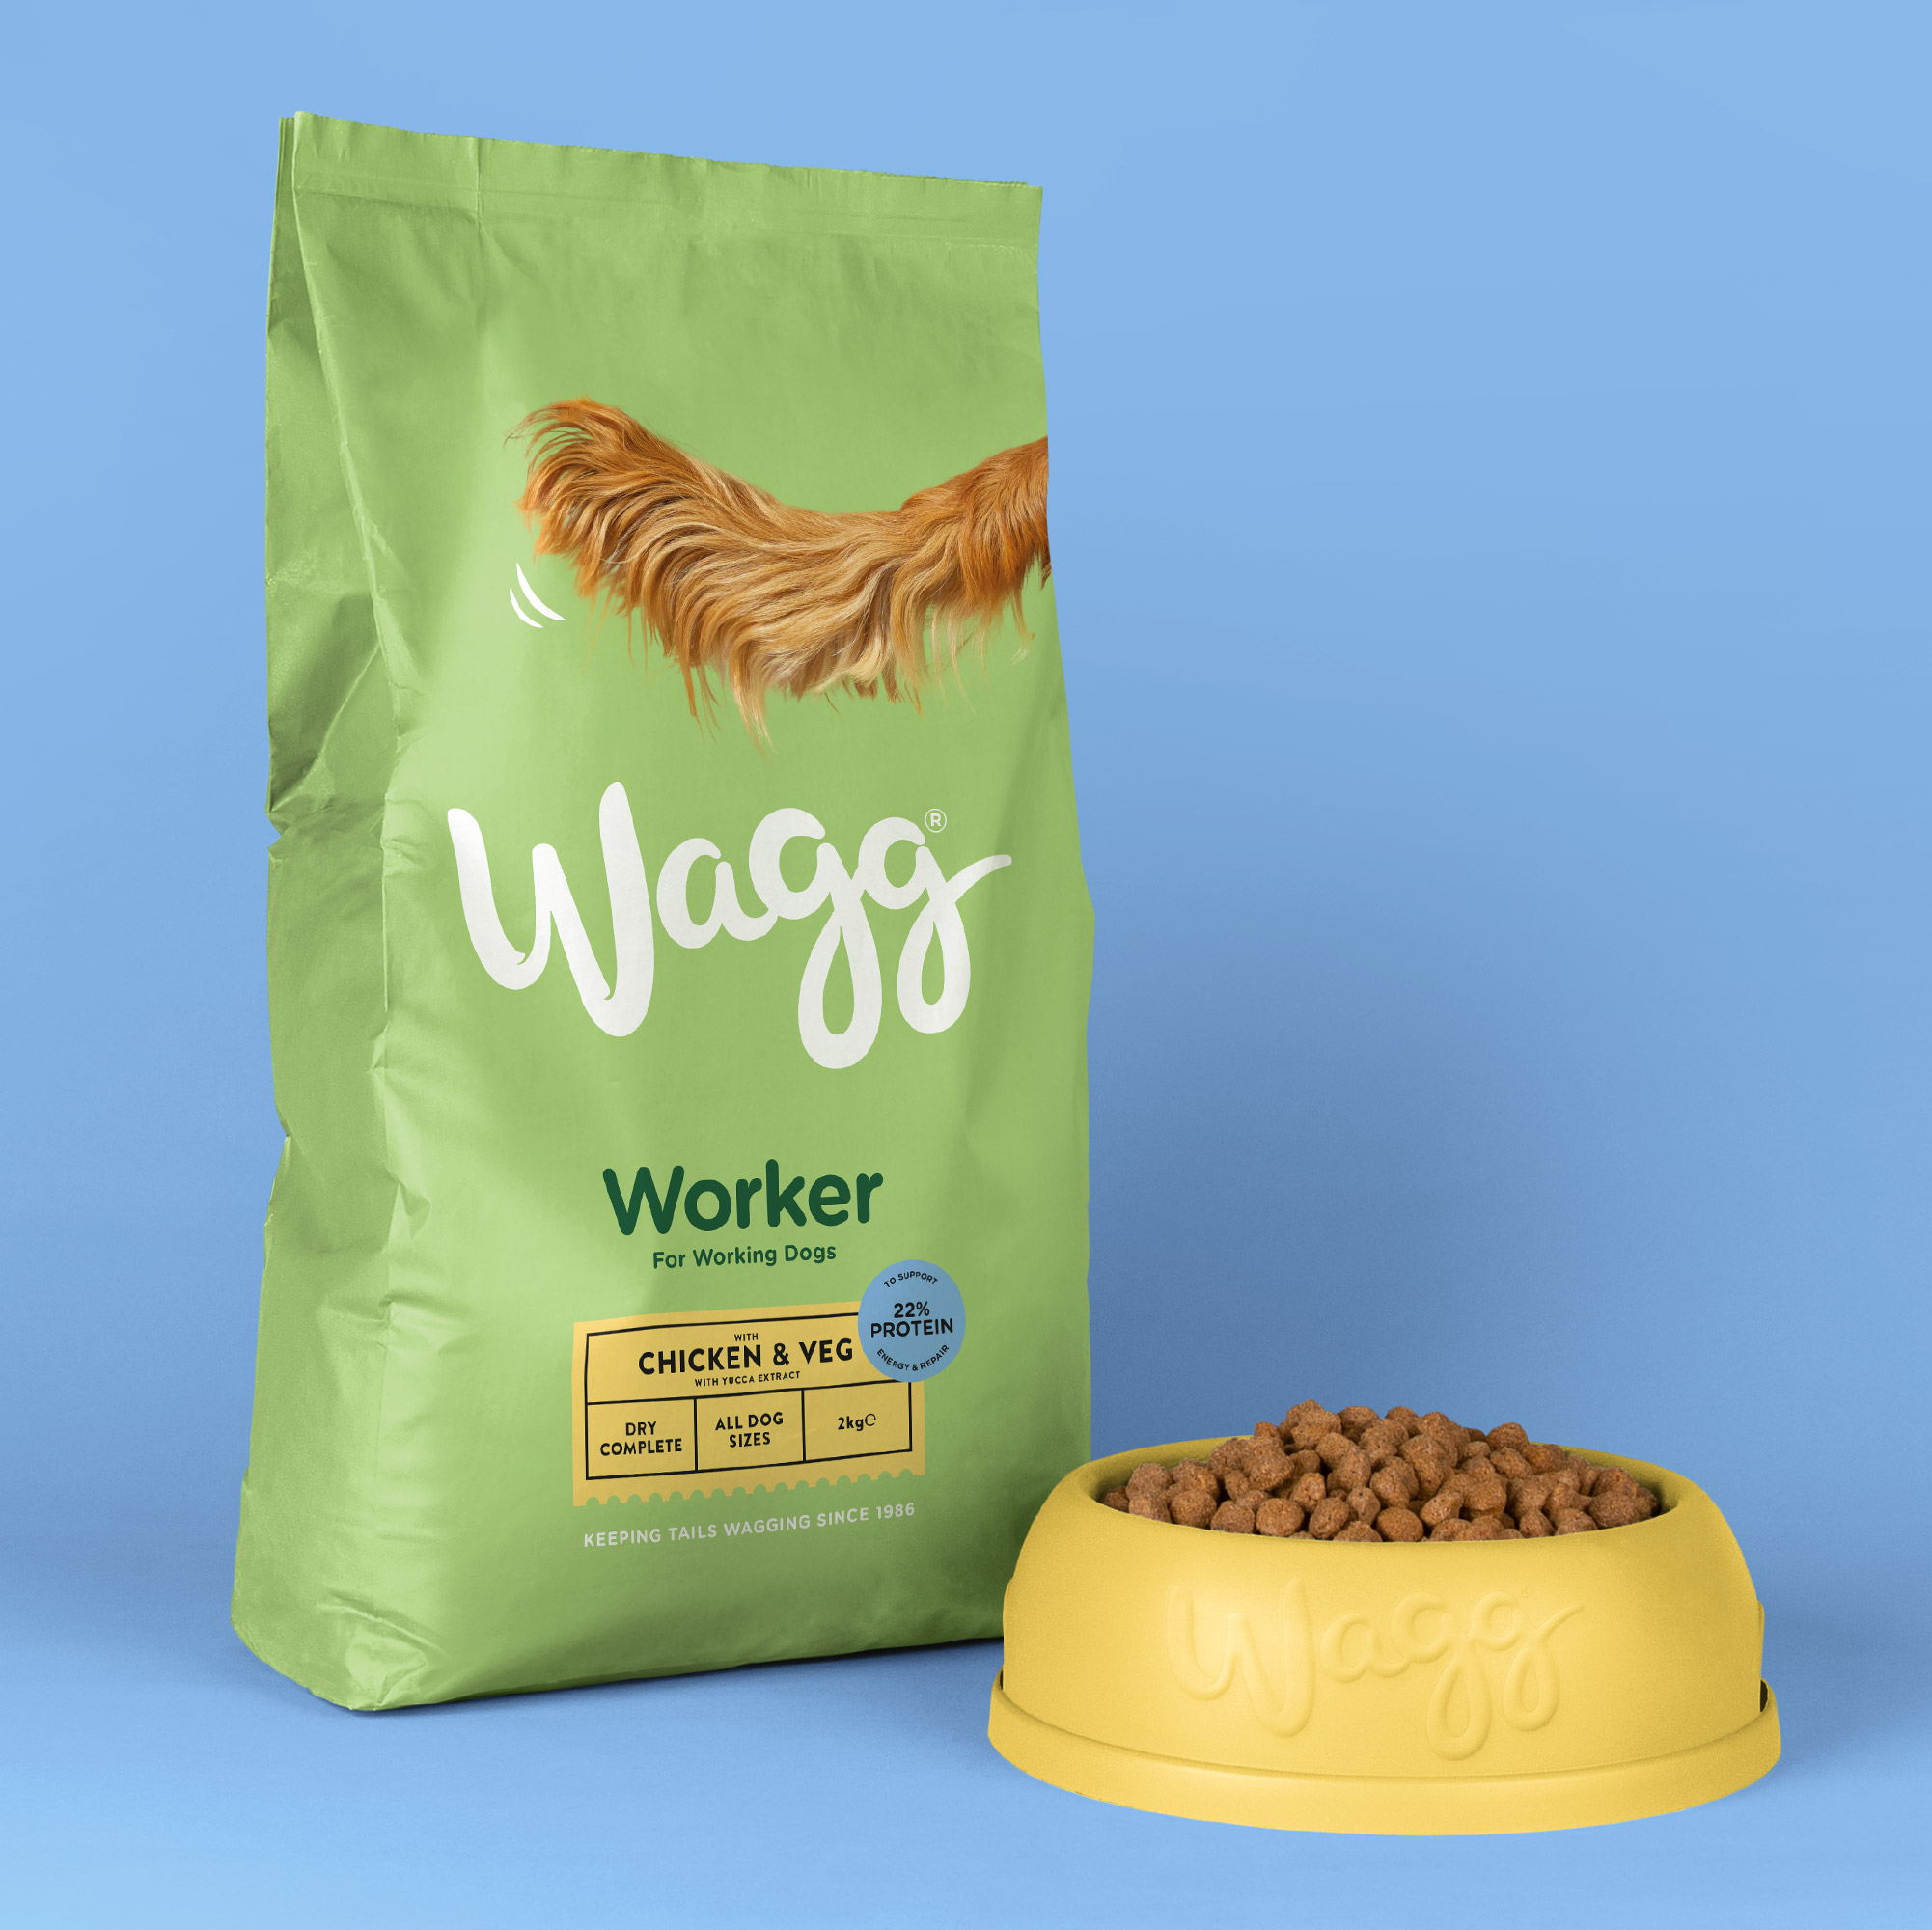 wagg dry dog food